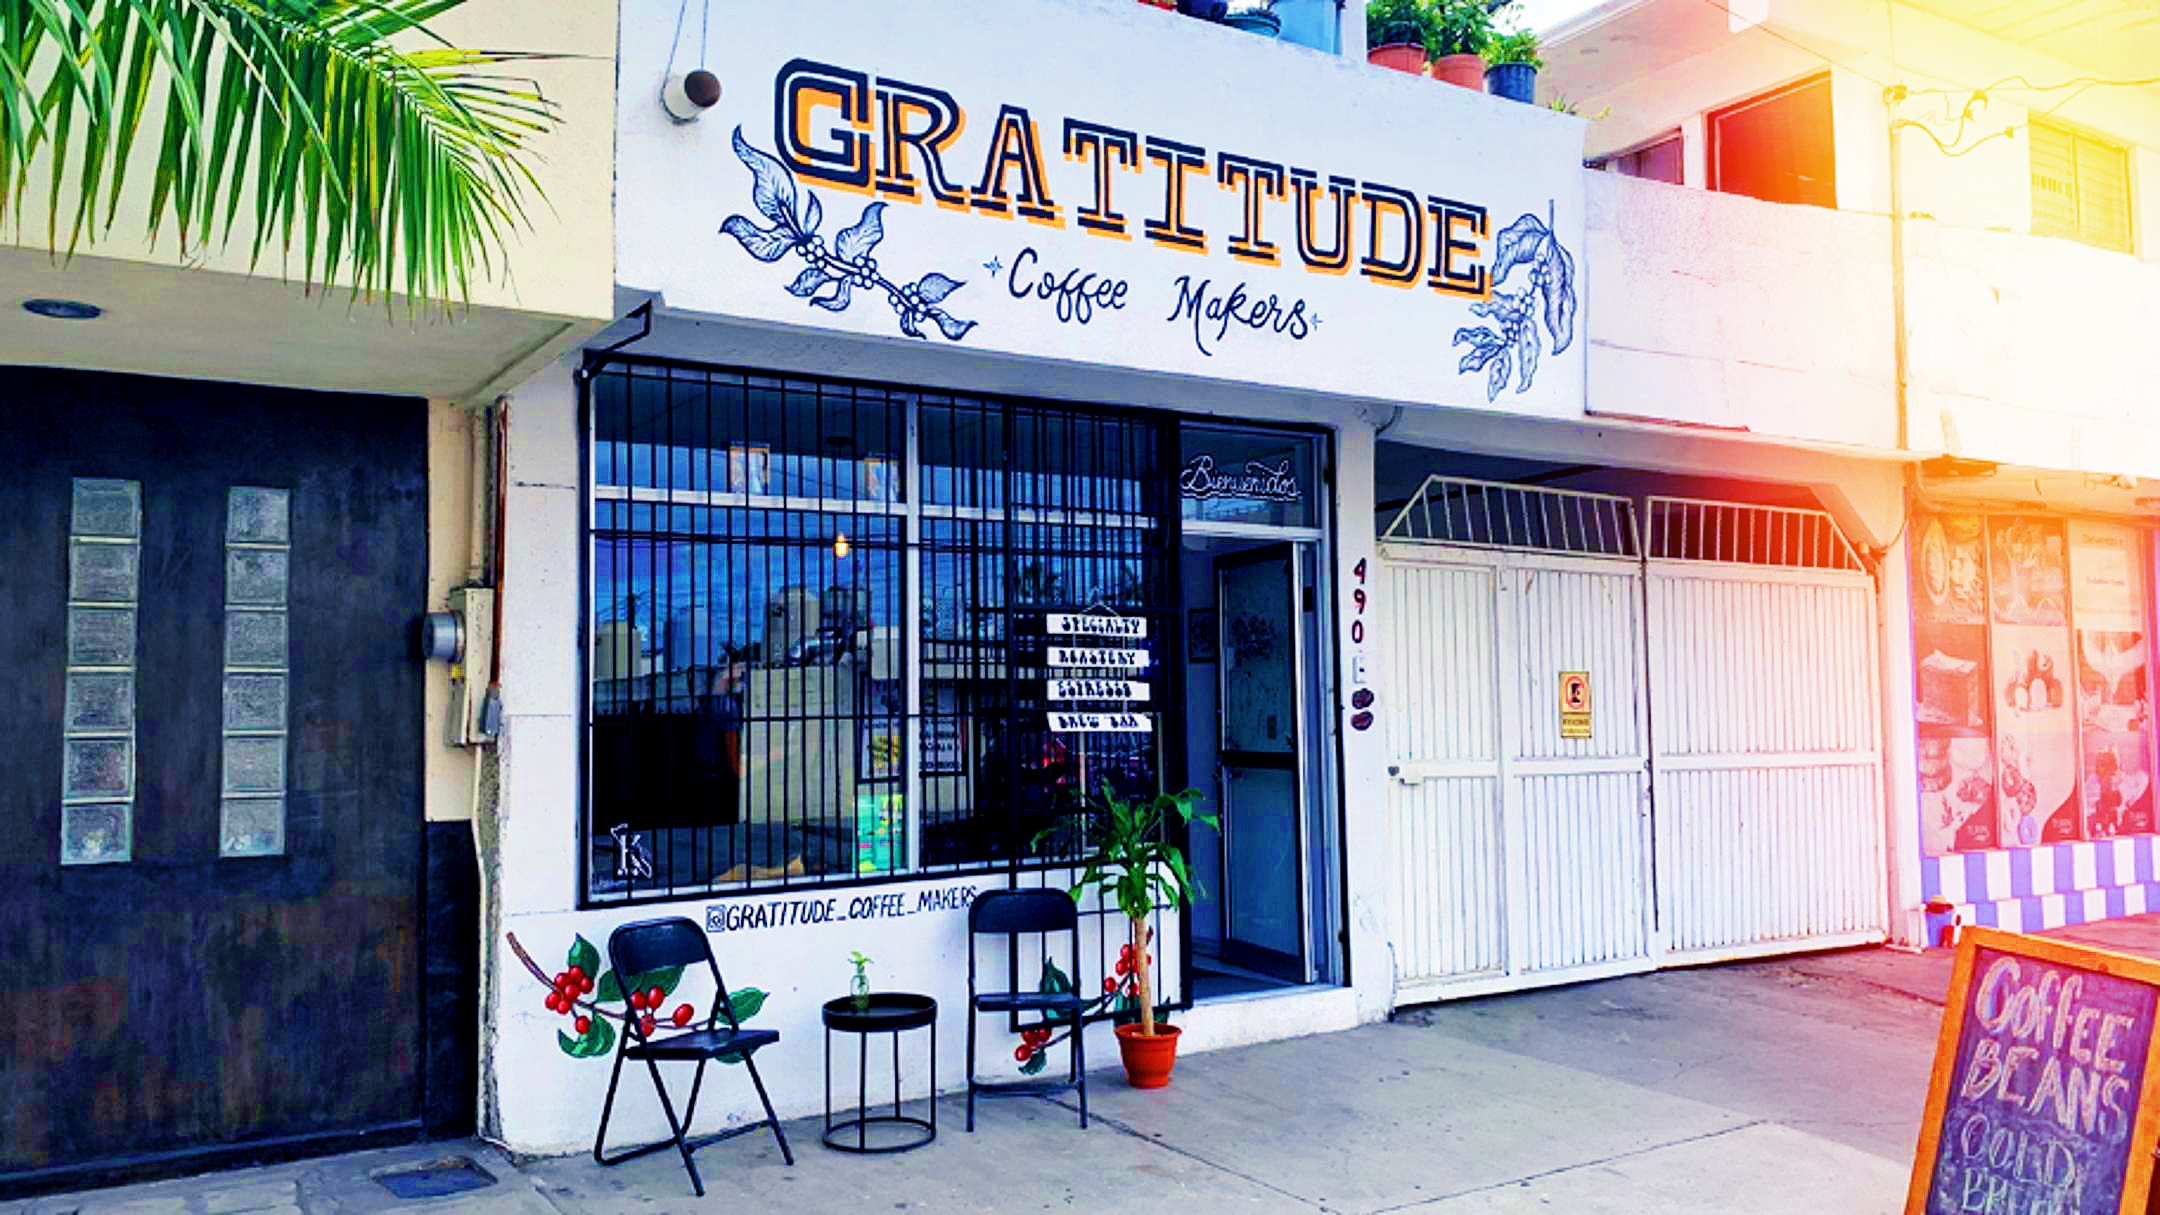 GRATITUDE CAFÉ facade La Paz Mexico Baja California Sur